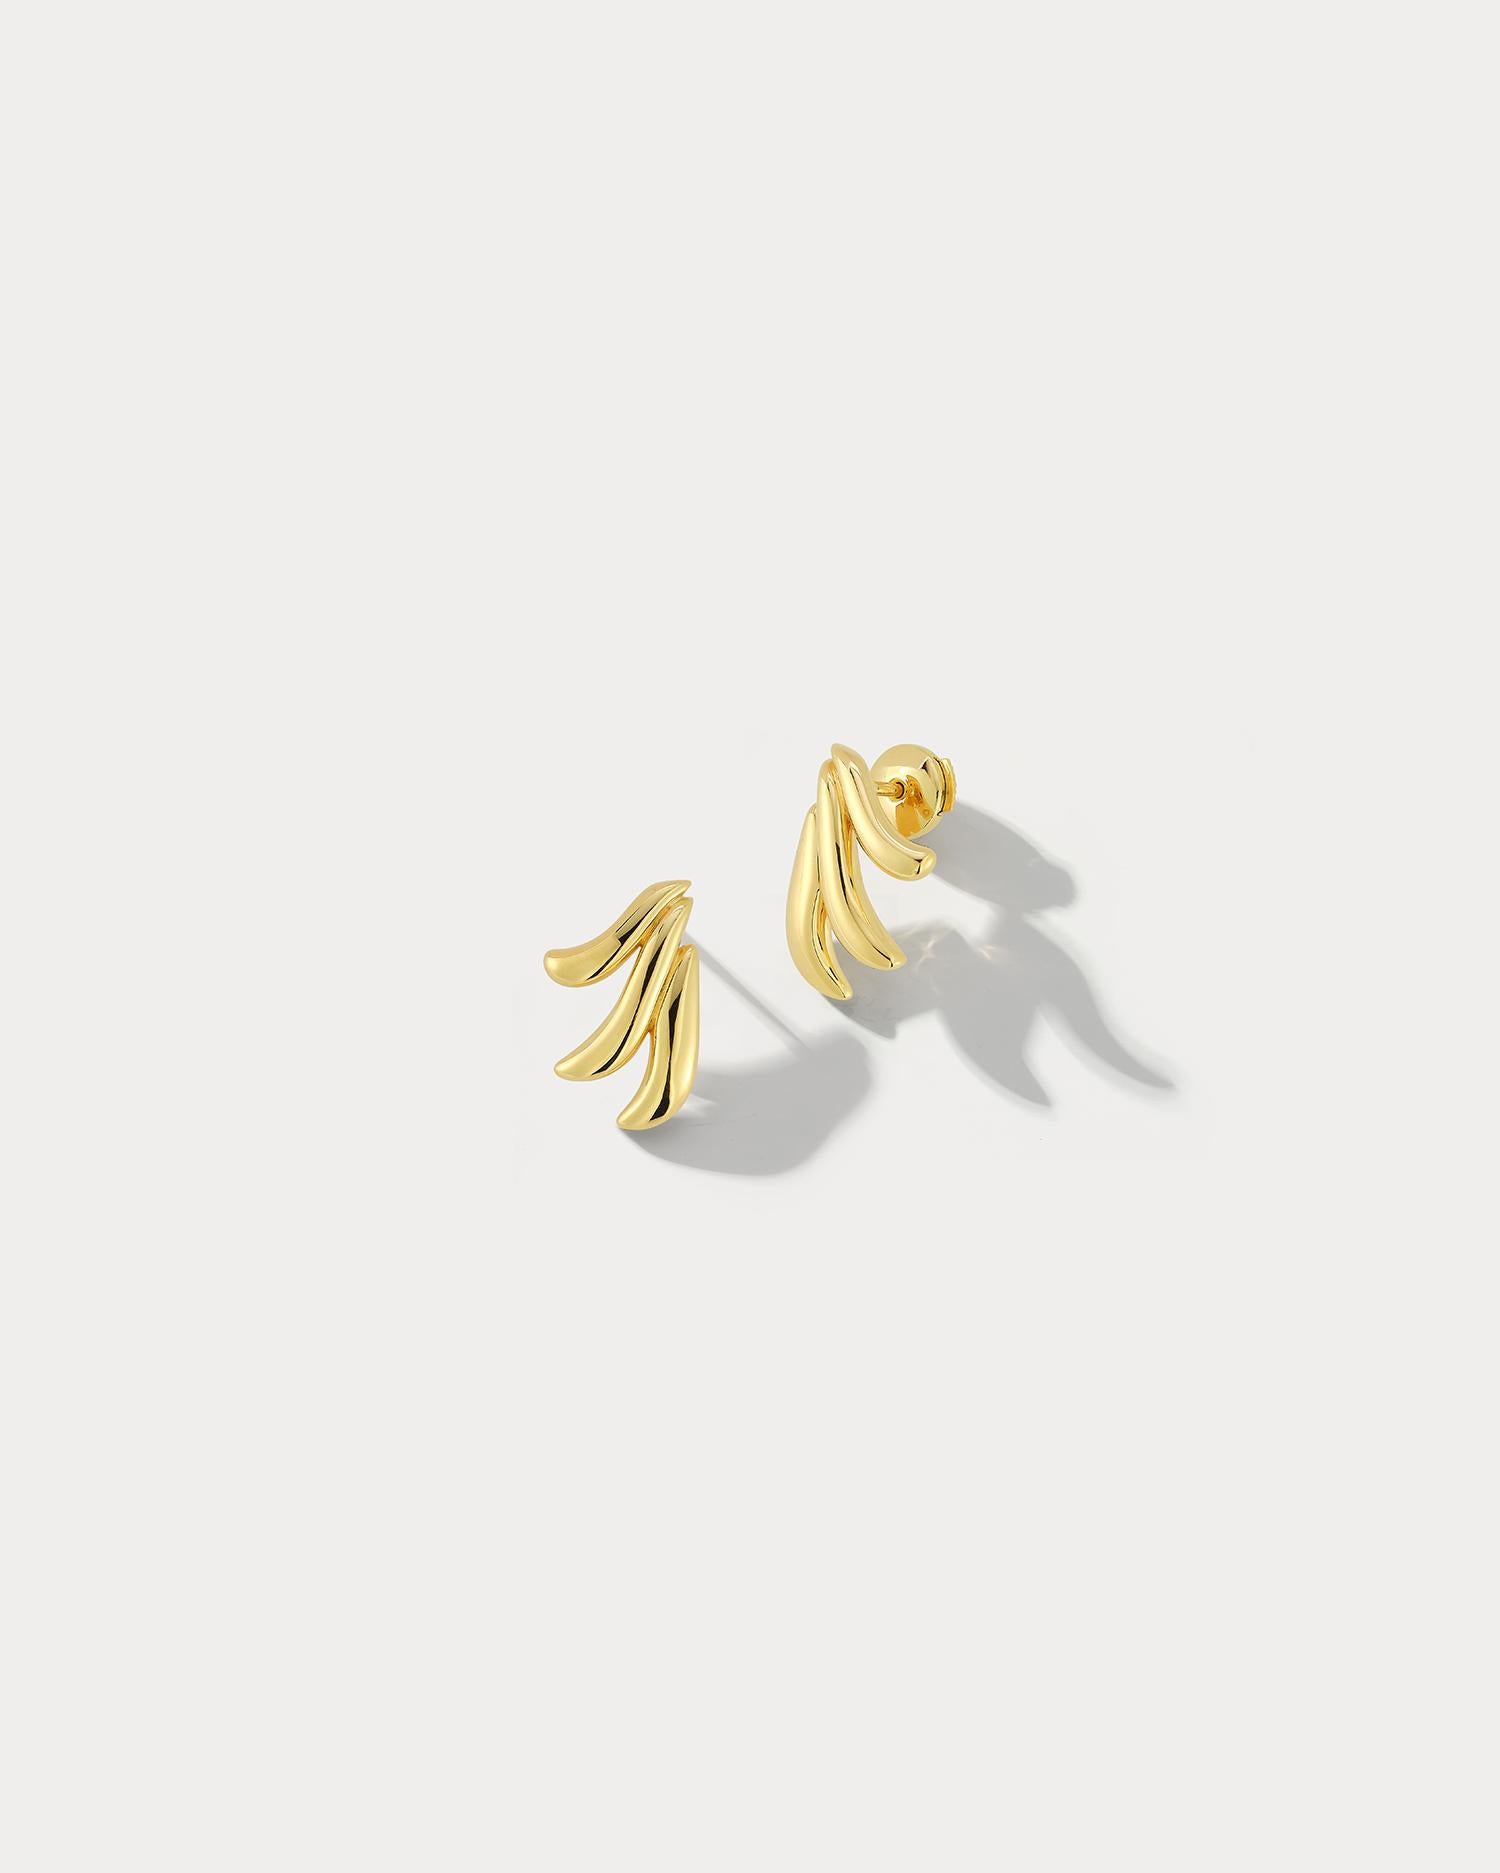 Unsere atemberaubenden Ohrringe aus 18k Gelbgold mit drei Blättern sind eine perfekte Mischung aus Eleganz und Raffinesse. Diese Ohrringe bestehen aus drei zarten Blättern aus 18 Karat Gelbgold, die die intellektuellen, emotionalen und